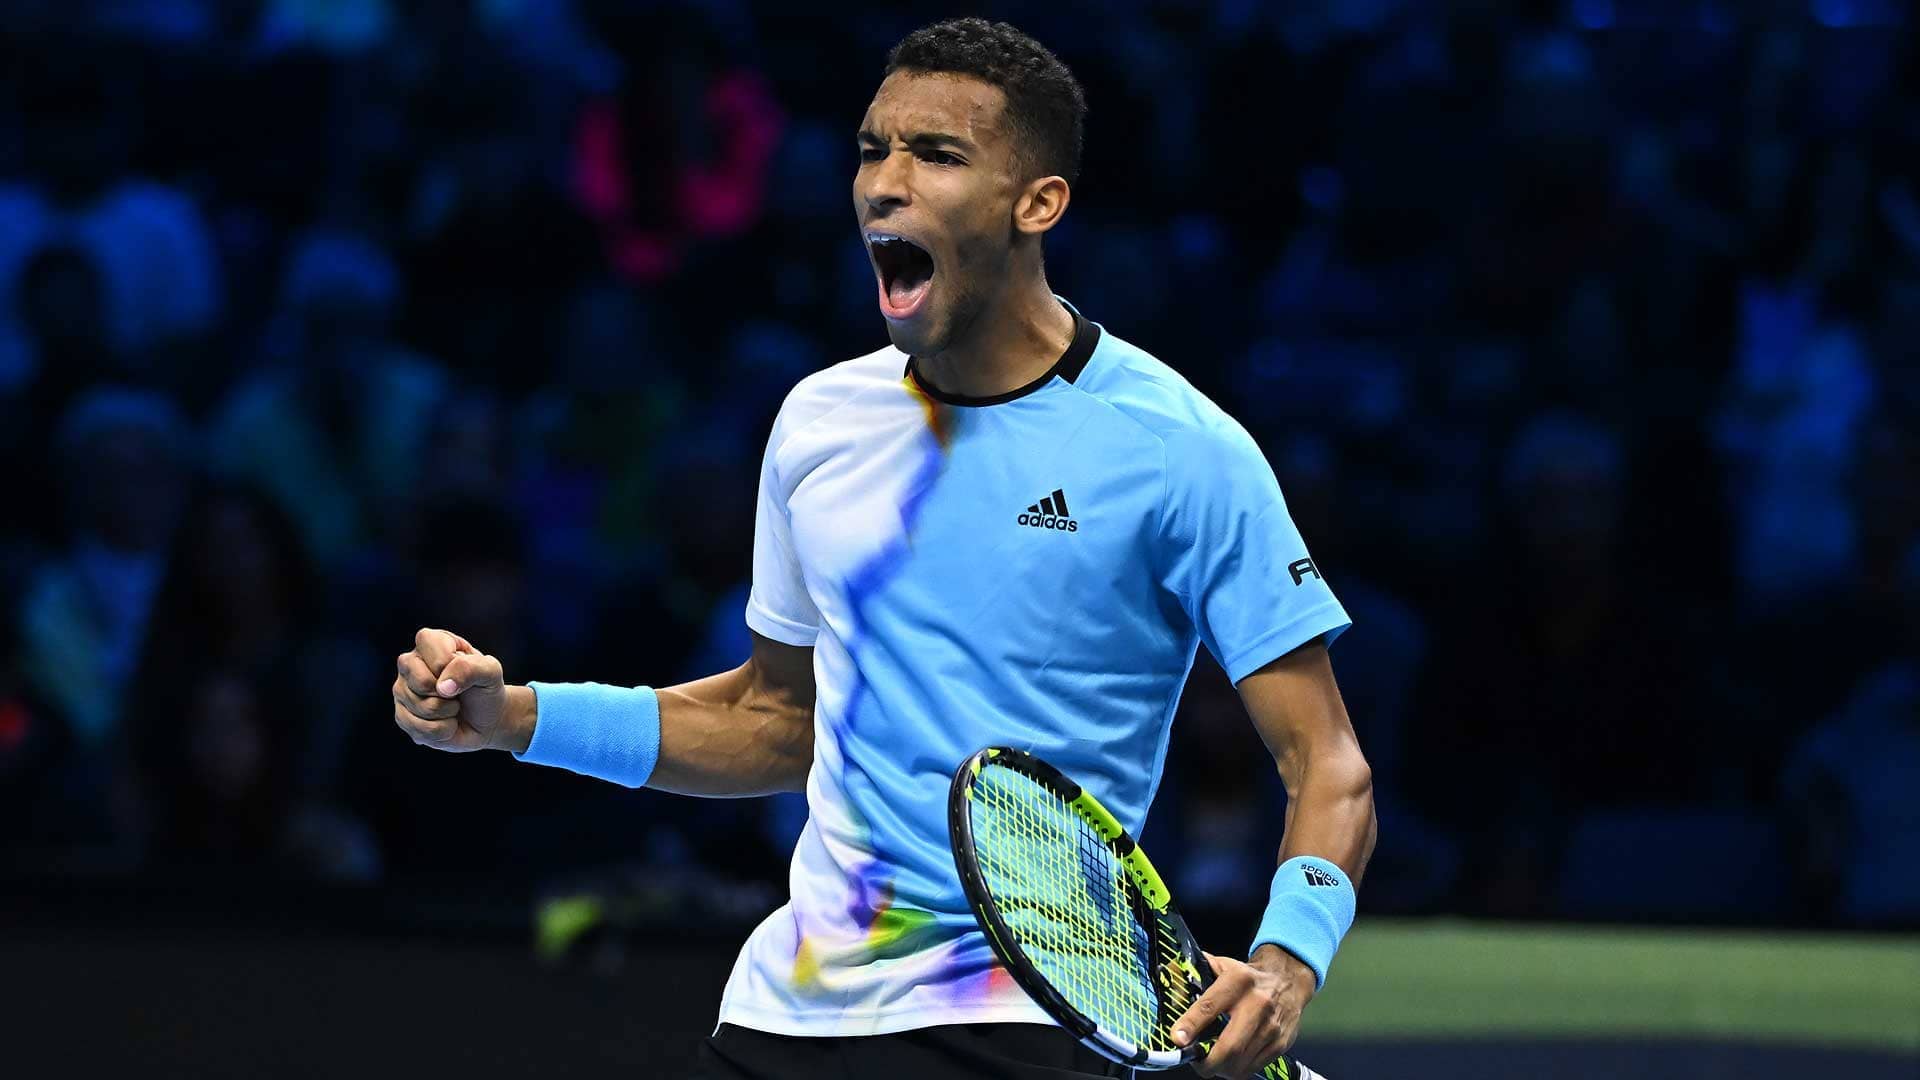 Felix Auger-Aliassime Takes Down Rafael Nadal In Turin ATP Tour Tennis